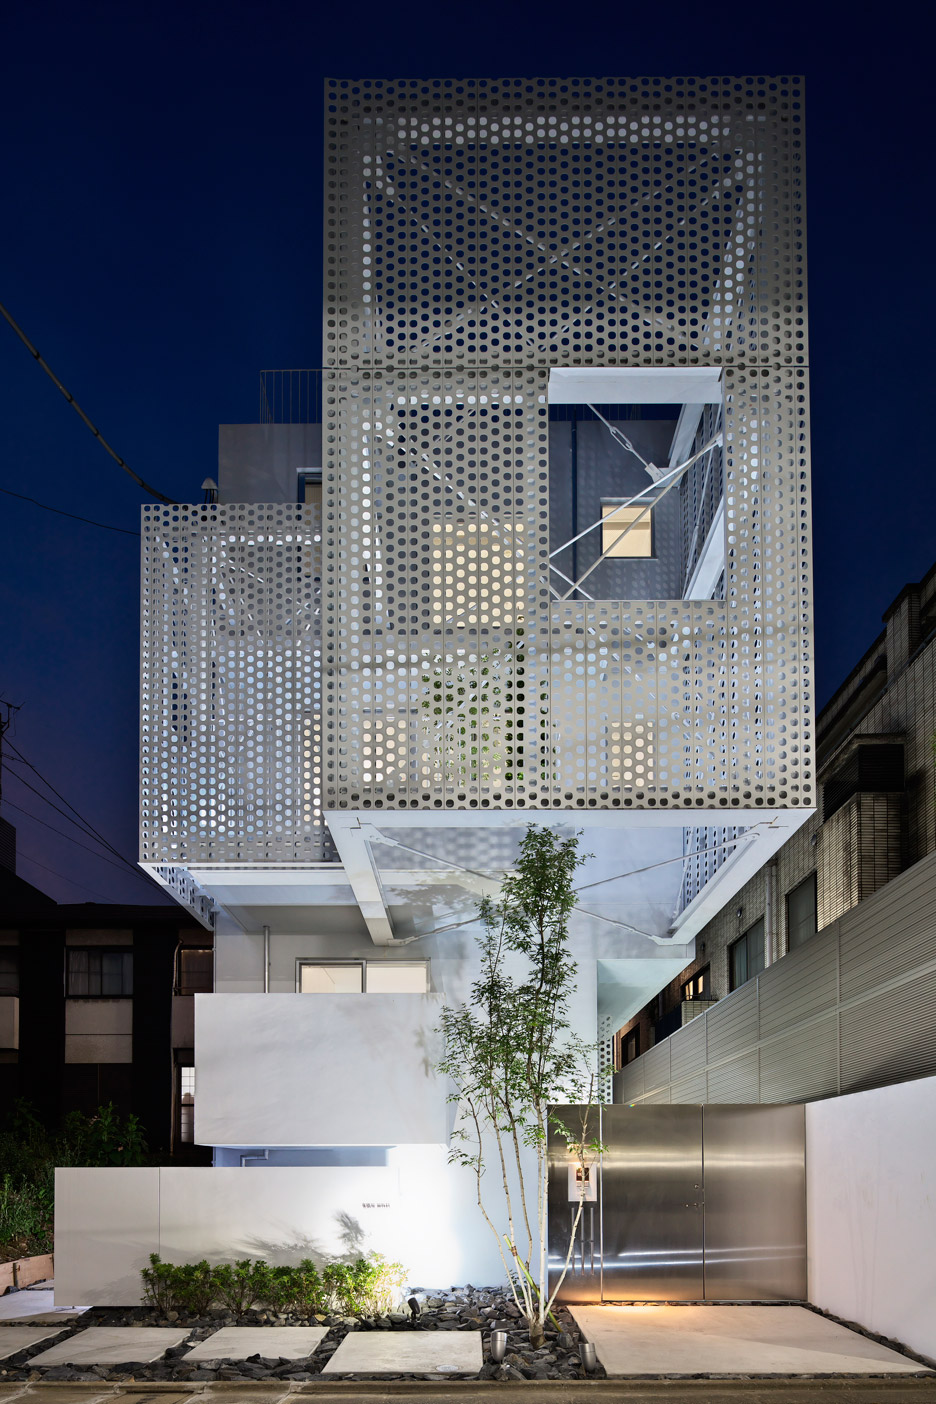 House by Hiroyuki Moriyama